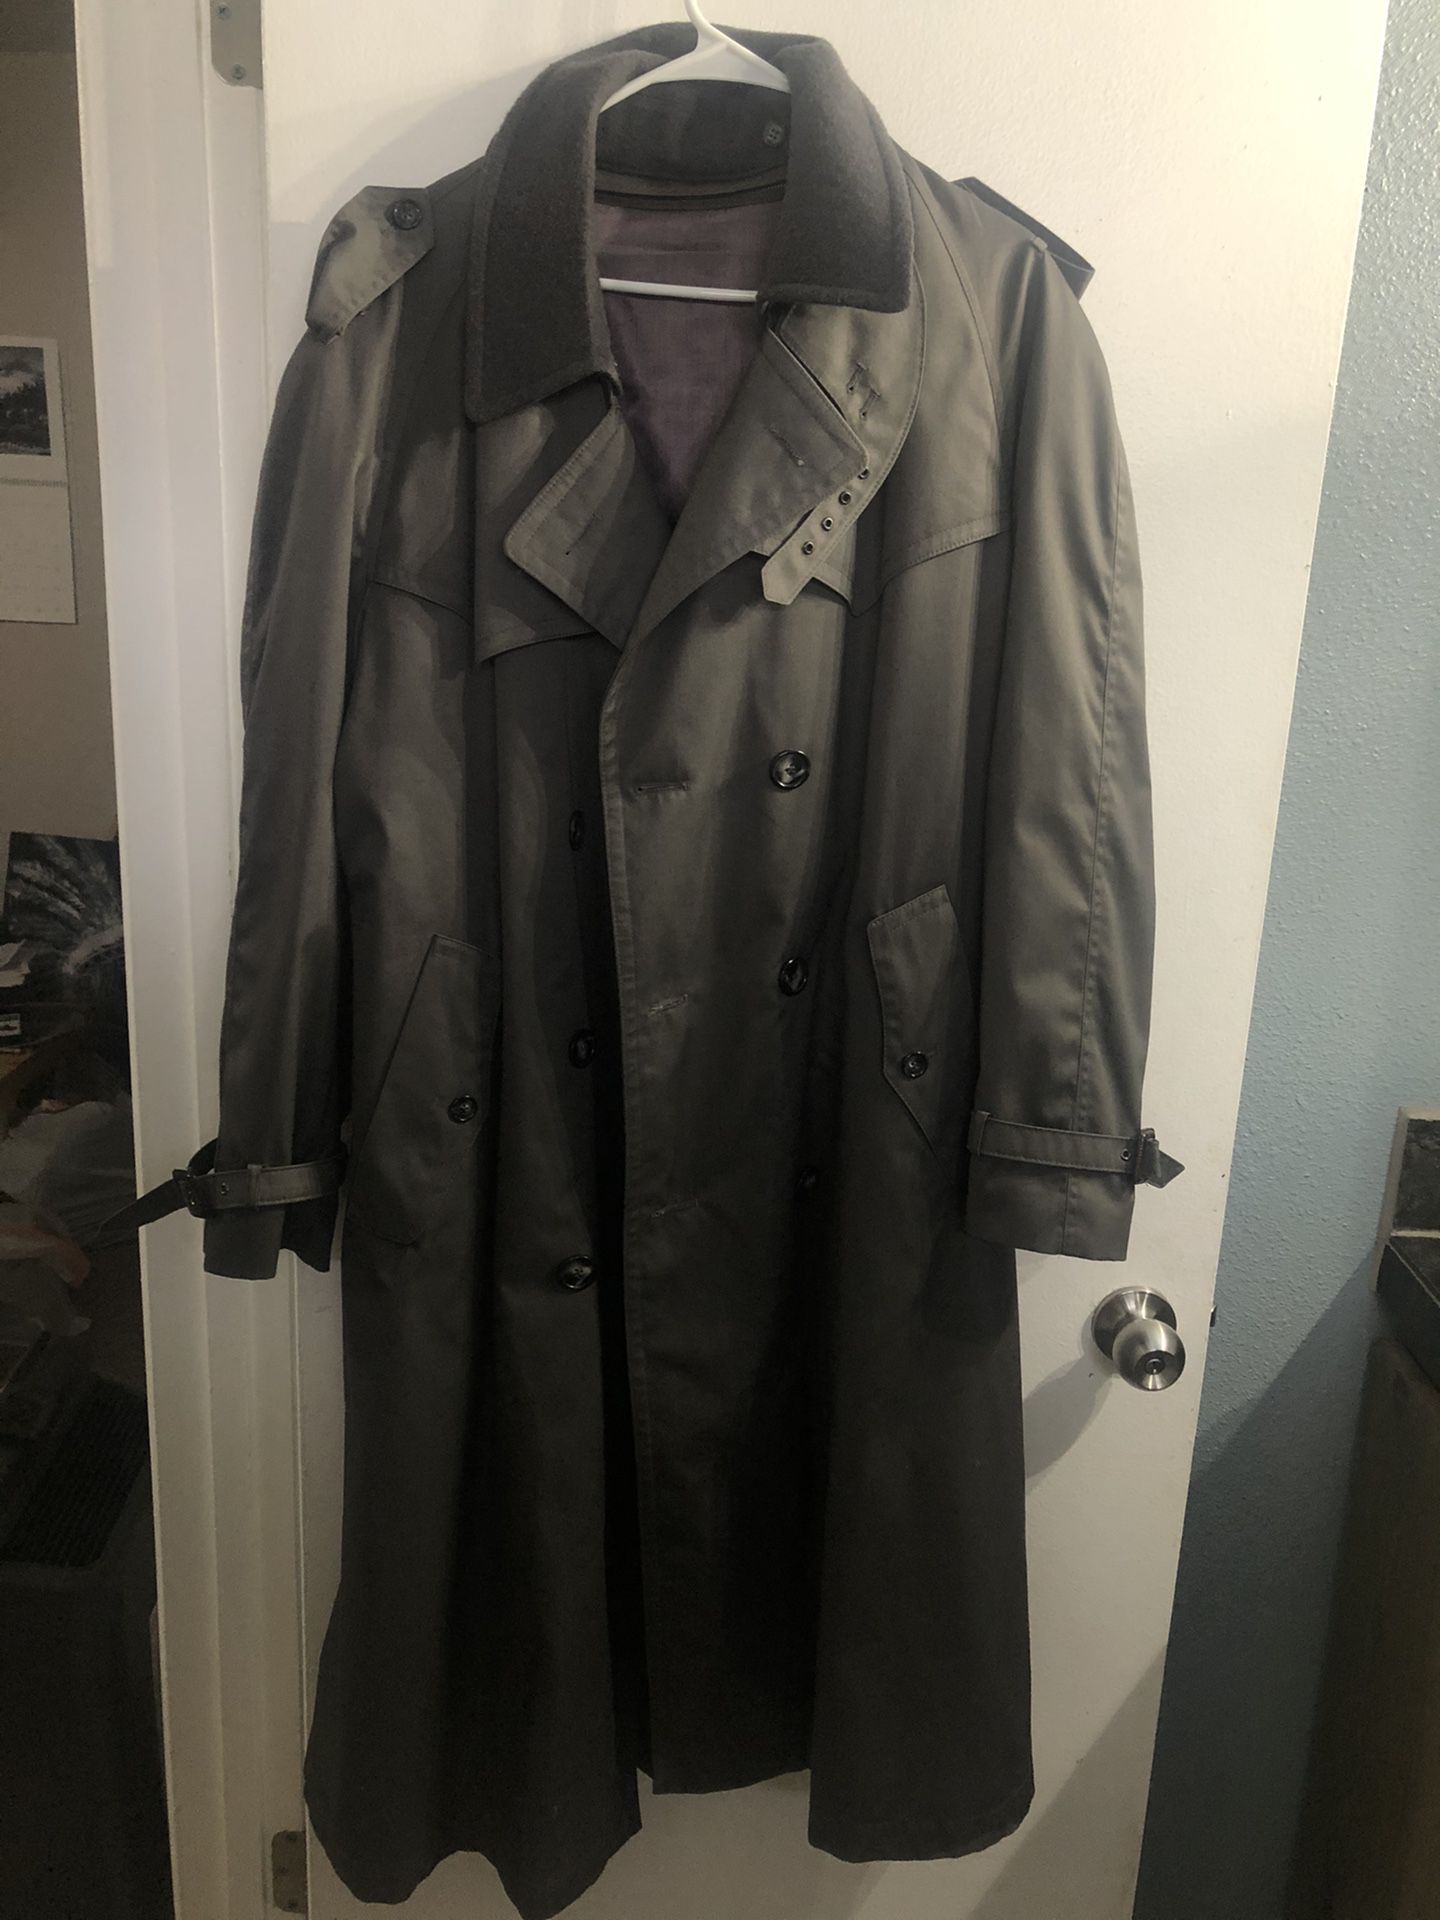 Men’s grey trench coat